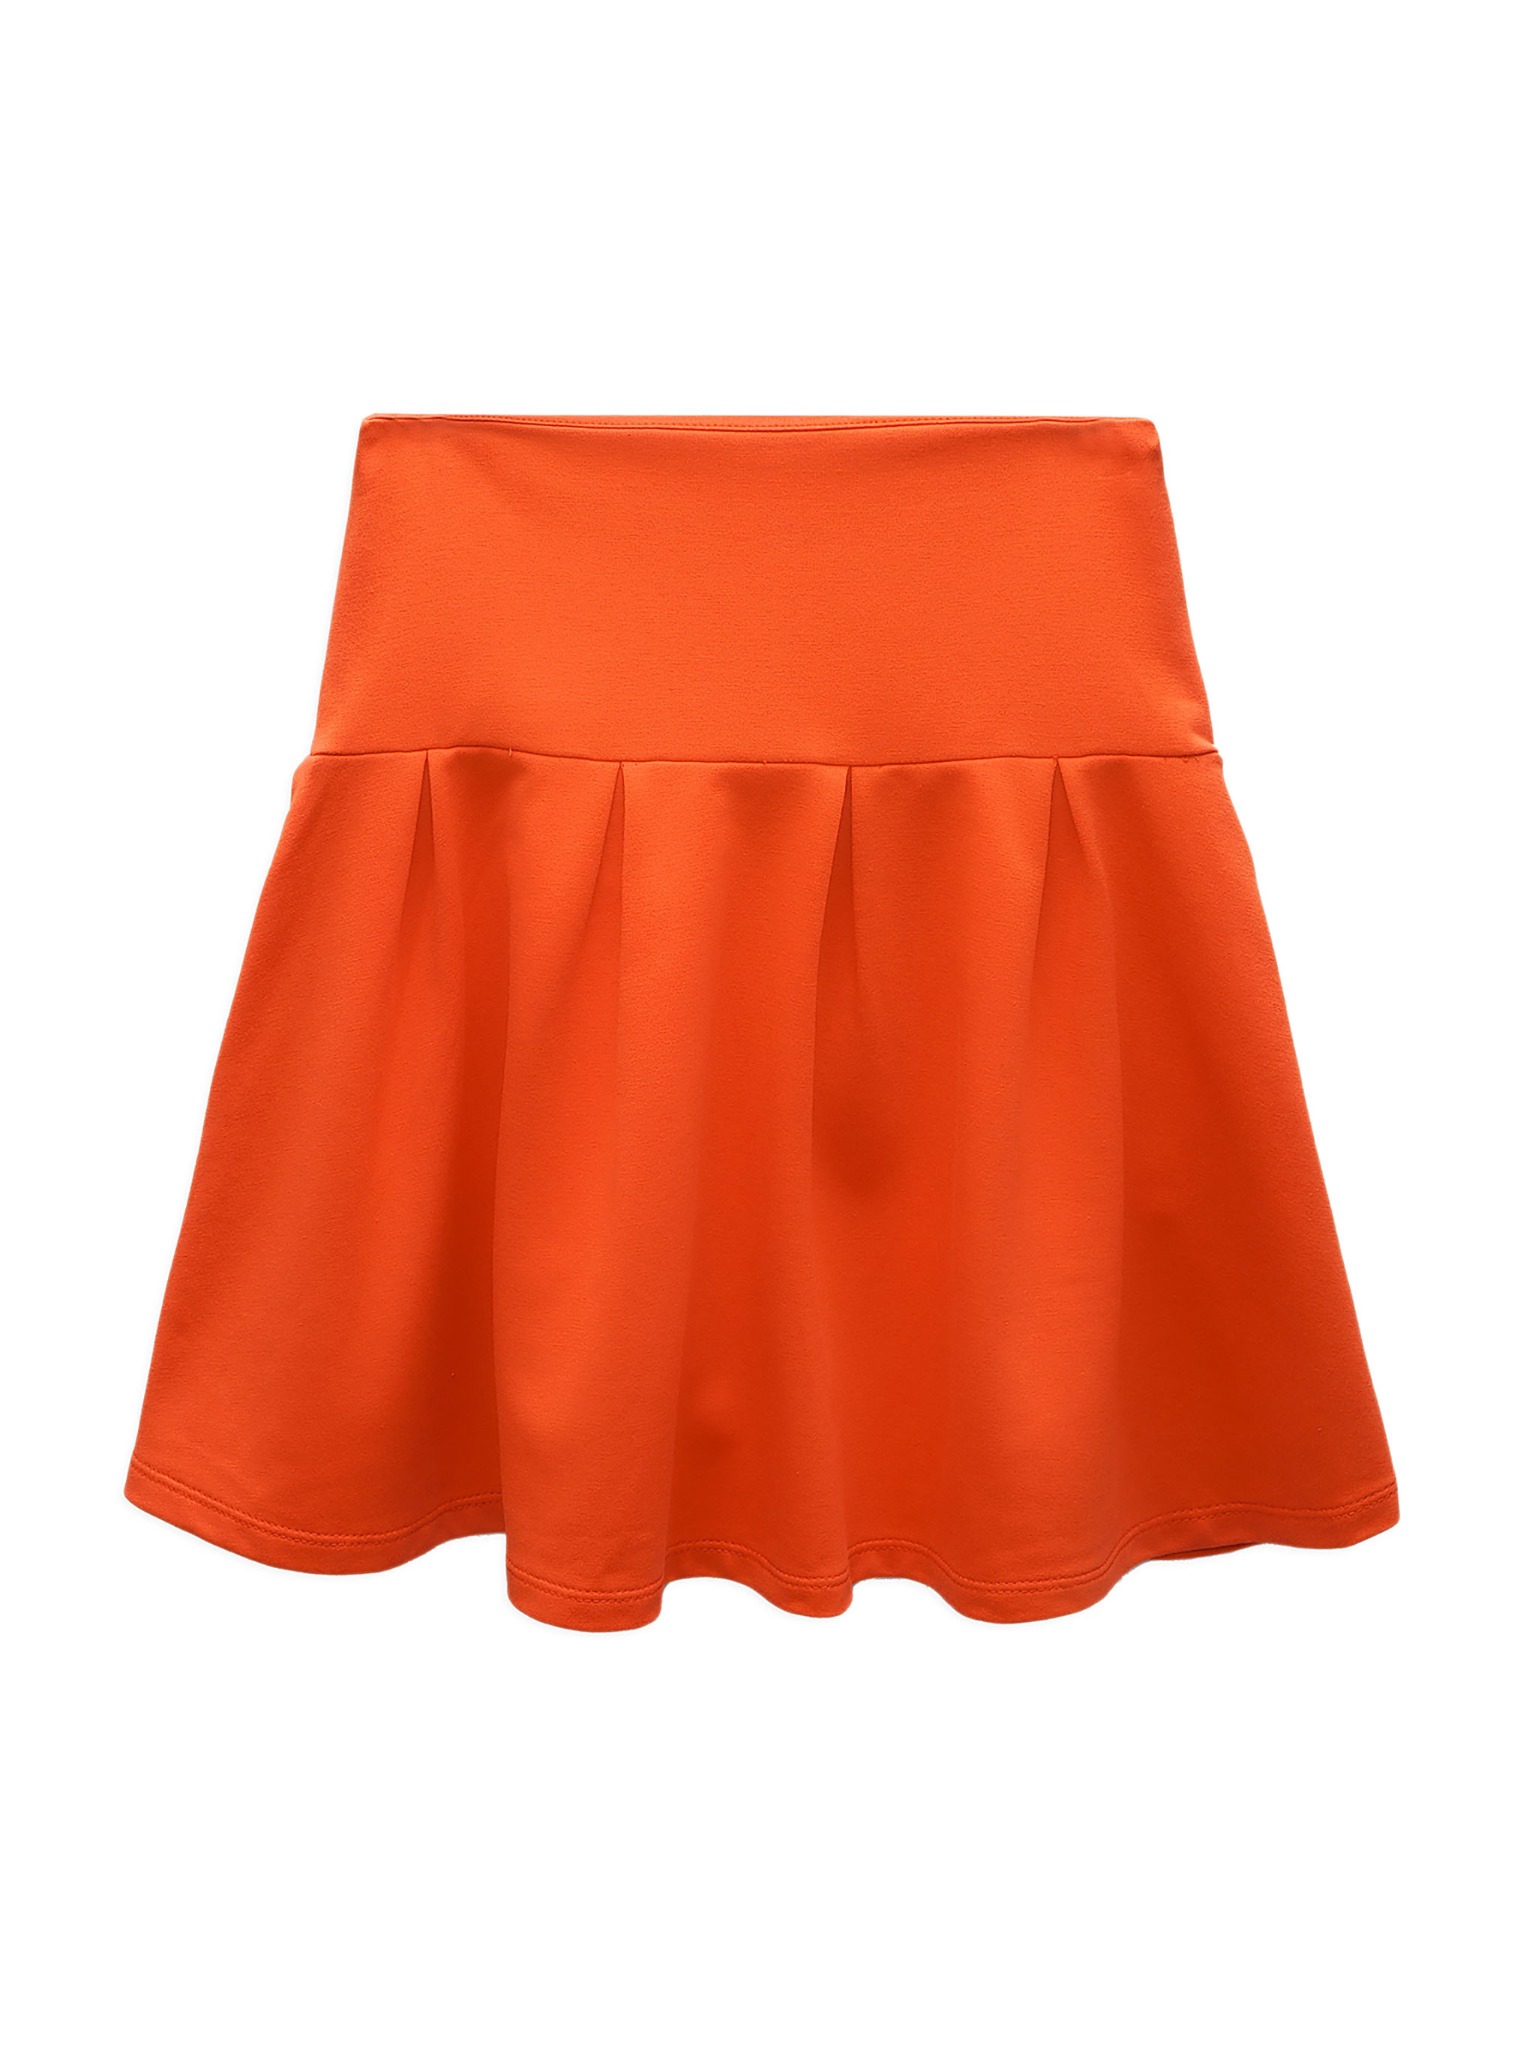 Chân Váy Nữ Xếp Ly Mini Pleat Skirt , Chất Thun Cotton Cá Tính, Năng Động,  Trẻ